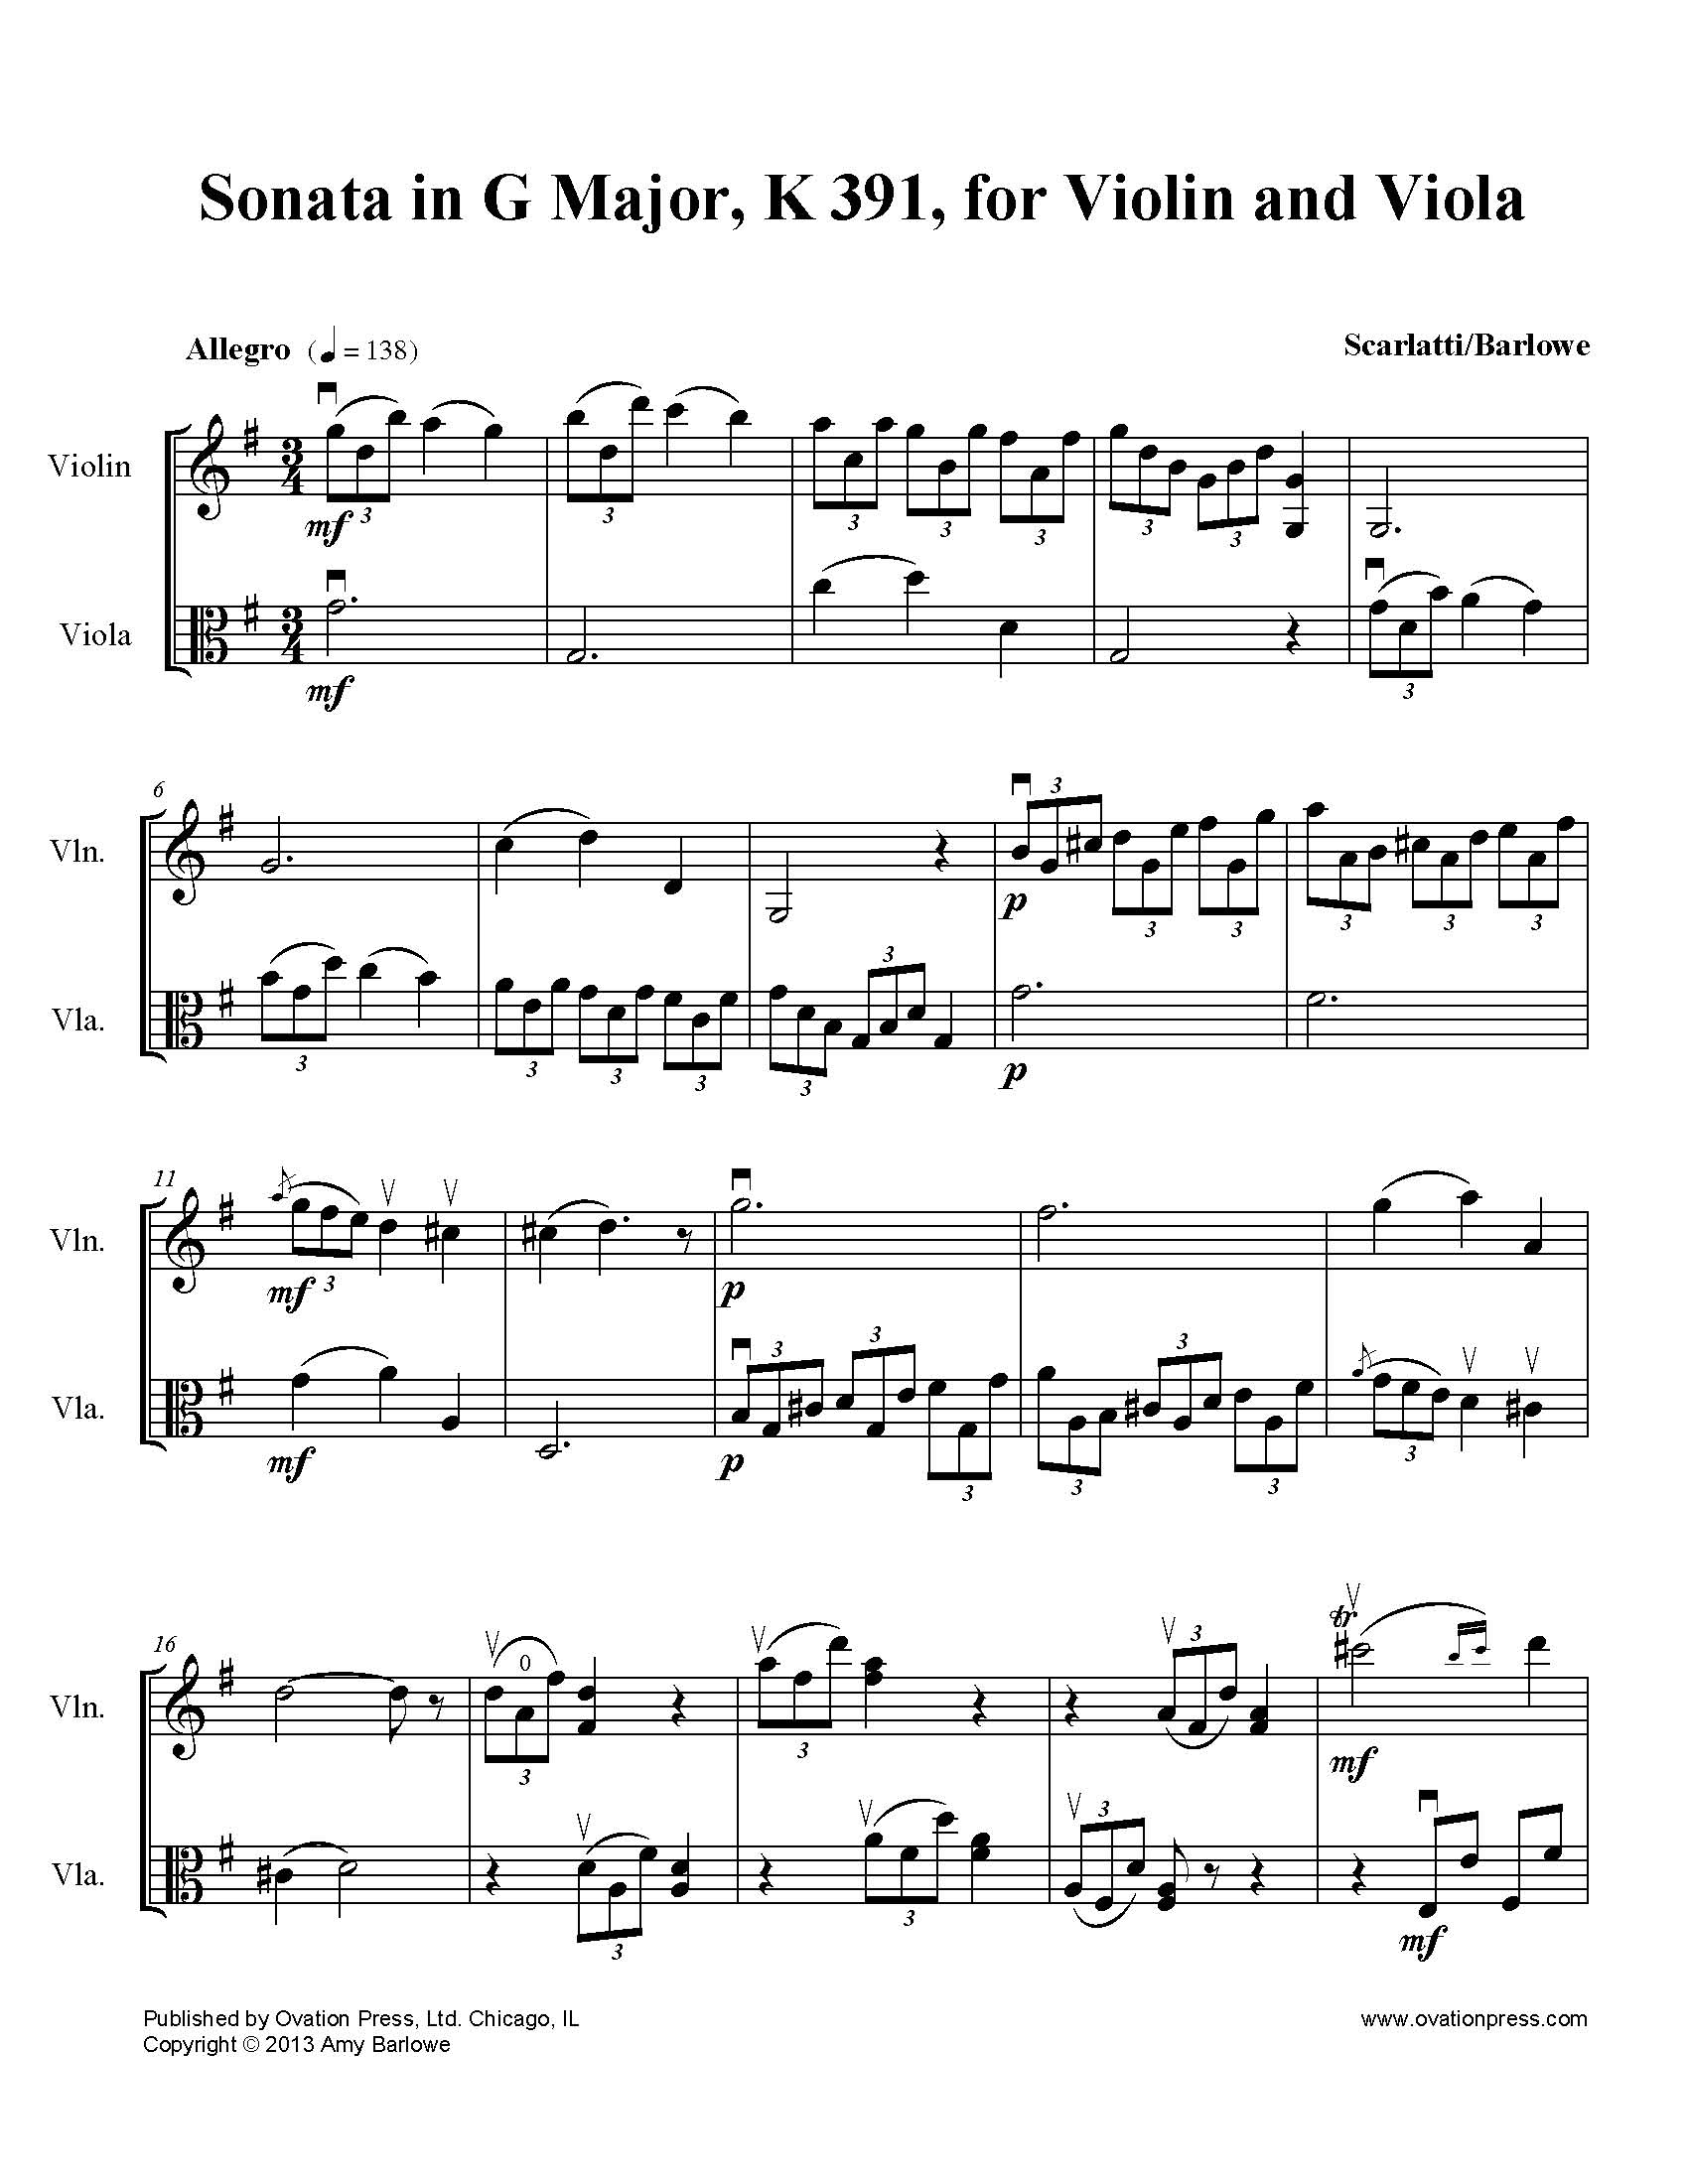 Scarlatti Sonata in G Major K. 391 for Violin and Viola